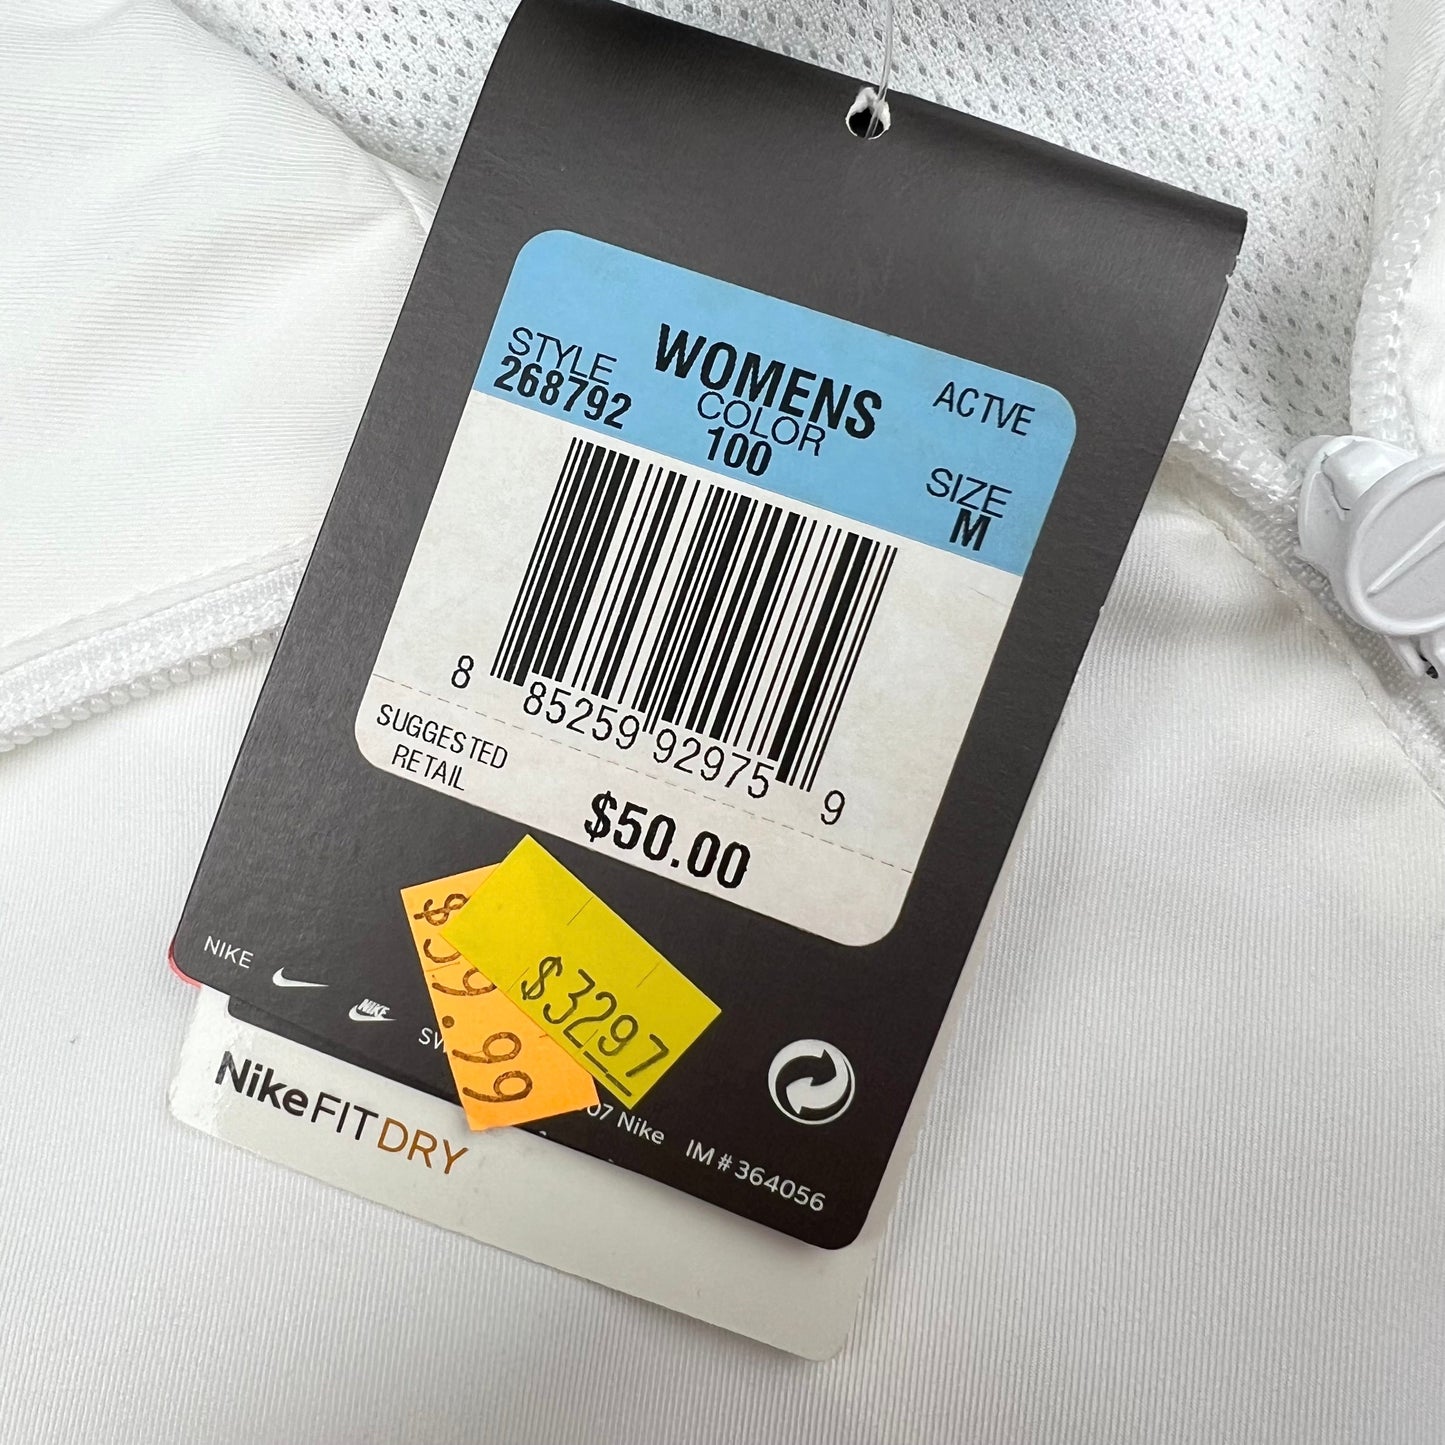 Grey & White Athletic Jacket By Nike, Size: M